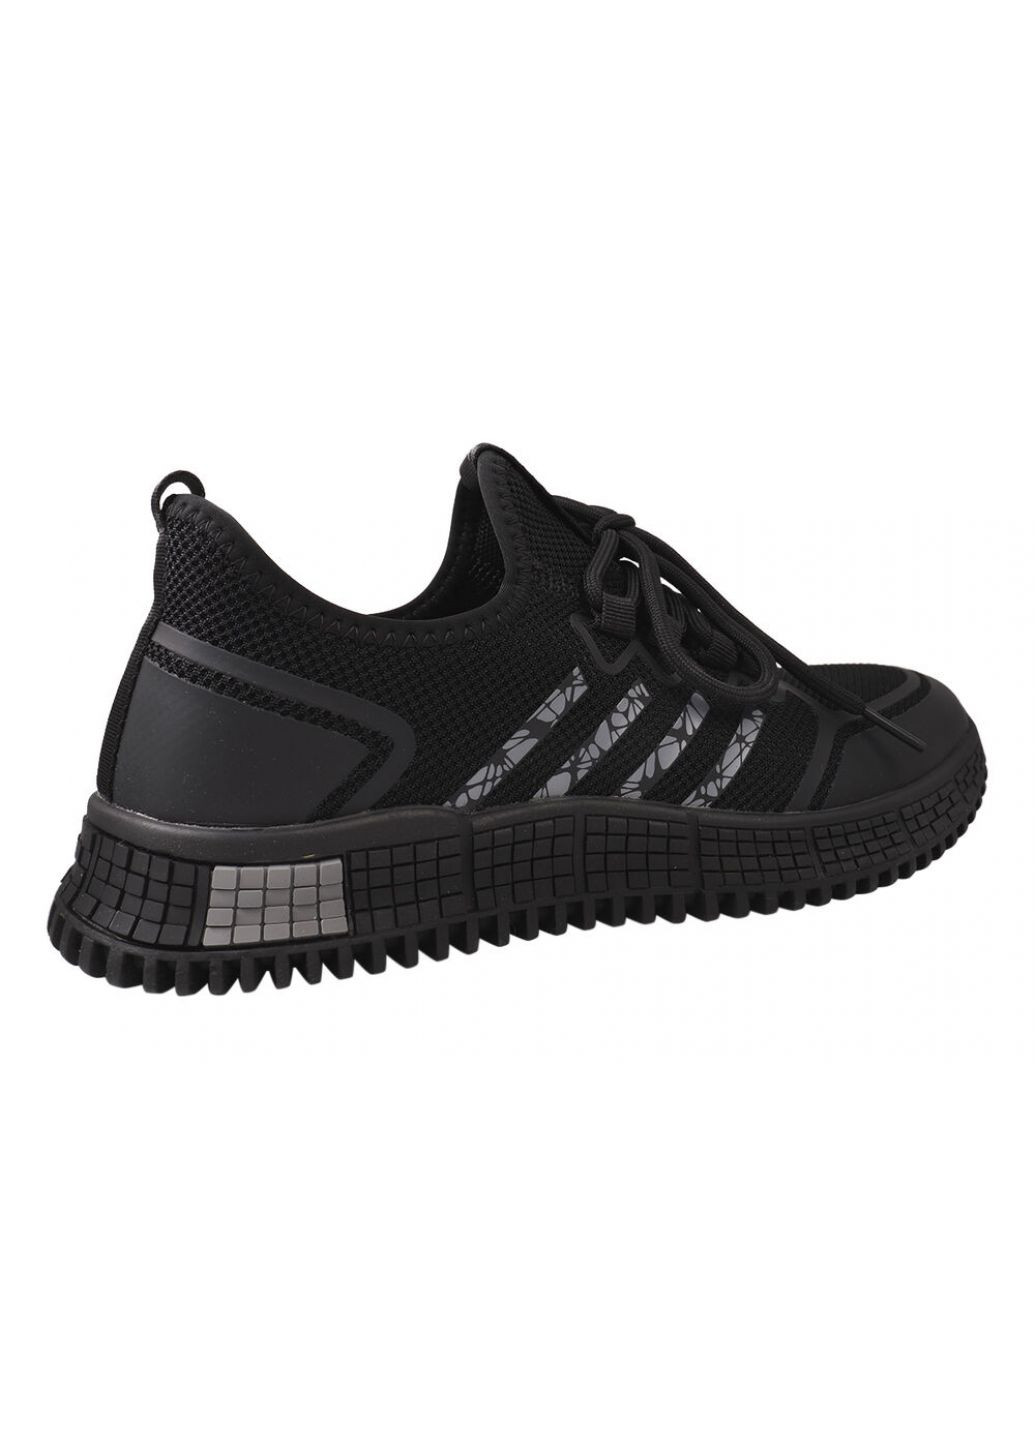 Черные кроссовки мужские из текстиля, на низком ходу, на шнуровке, черные, Berisstini 13-21DK